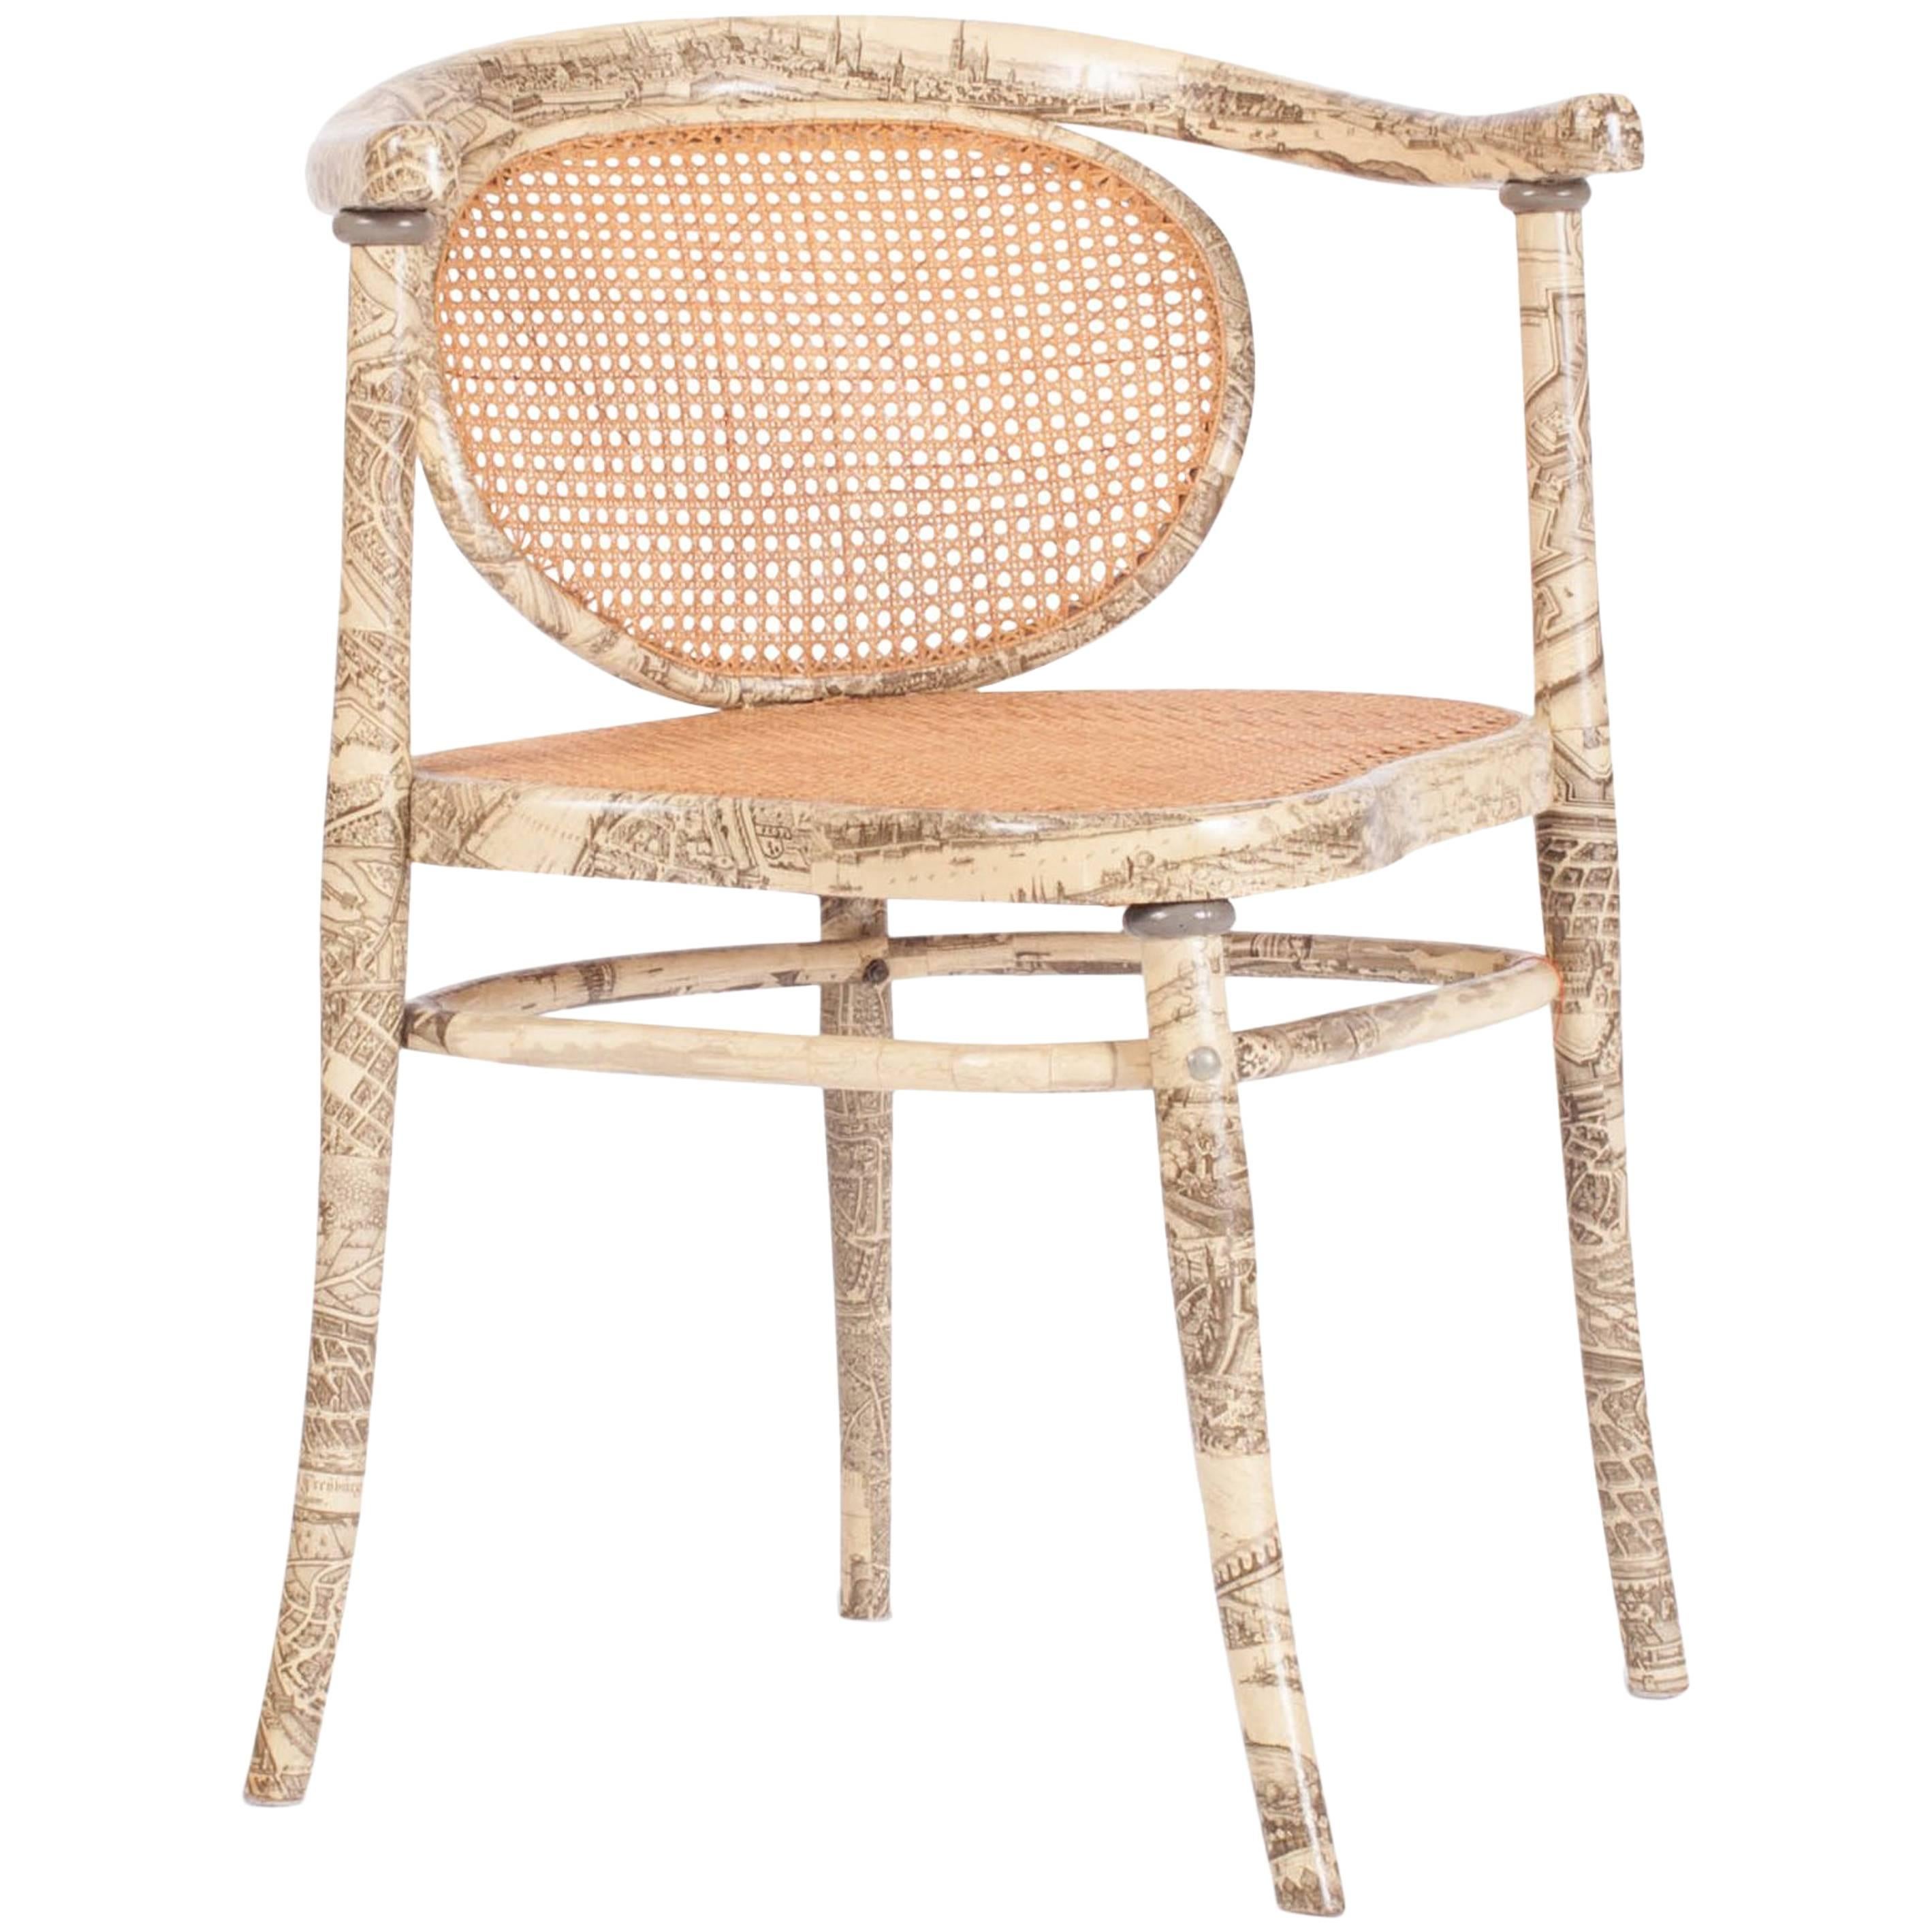 Thonet-Sessel mit einer gedruckten Illustration. 

Der Sitz und die Rückenlehne sind aus Rattan geflochten. Der Rest des Rahmens ist mit einem Druck versehen
die von dem großen Fornasetti beeinflusst worden sein könnten. Der Stuhl ist auf der